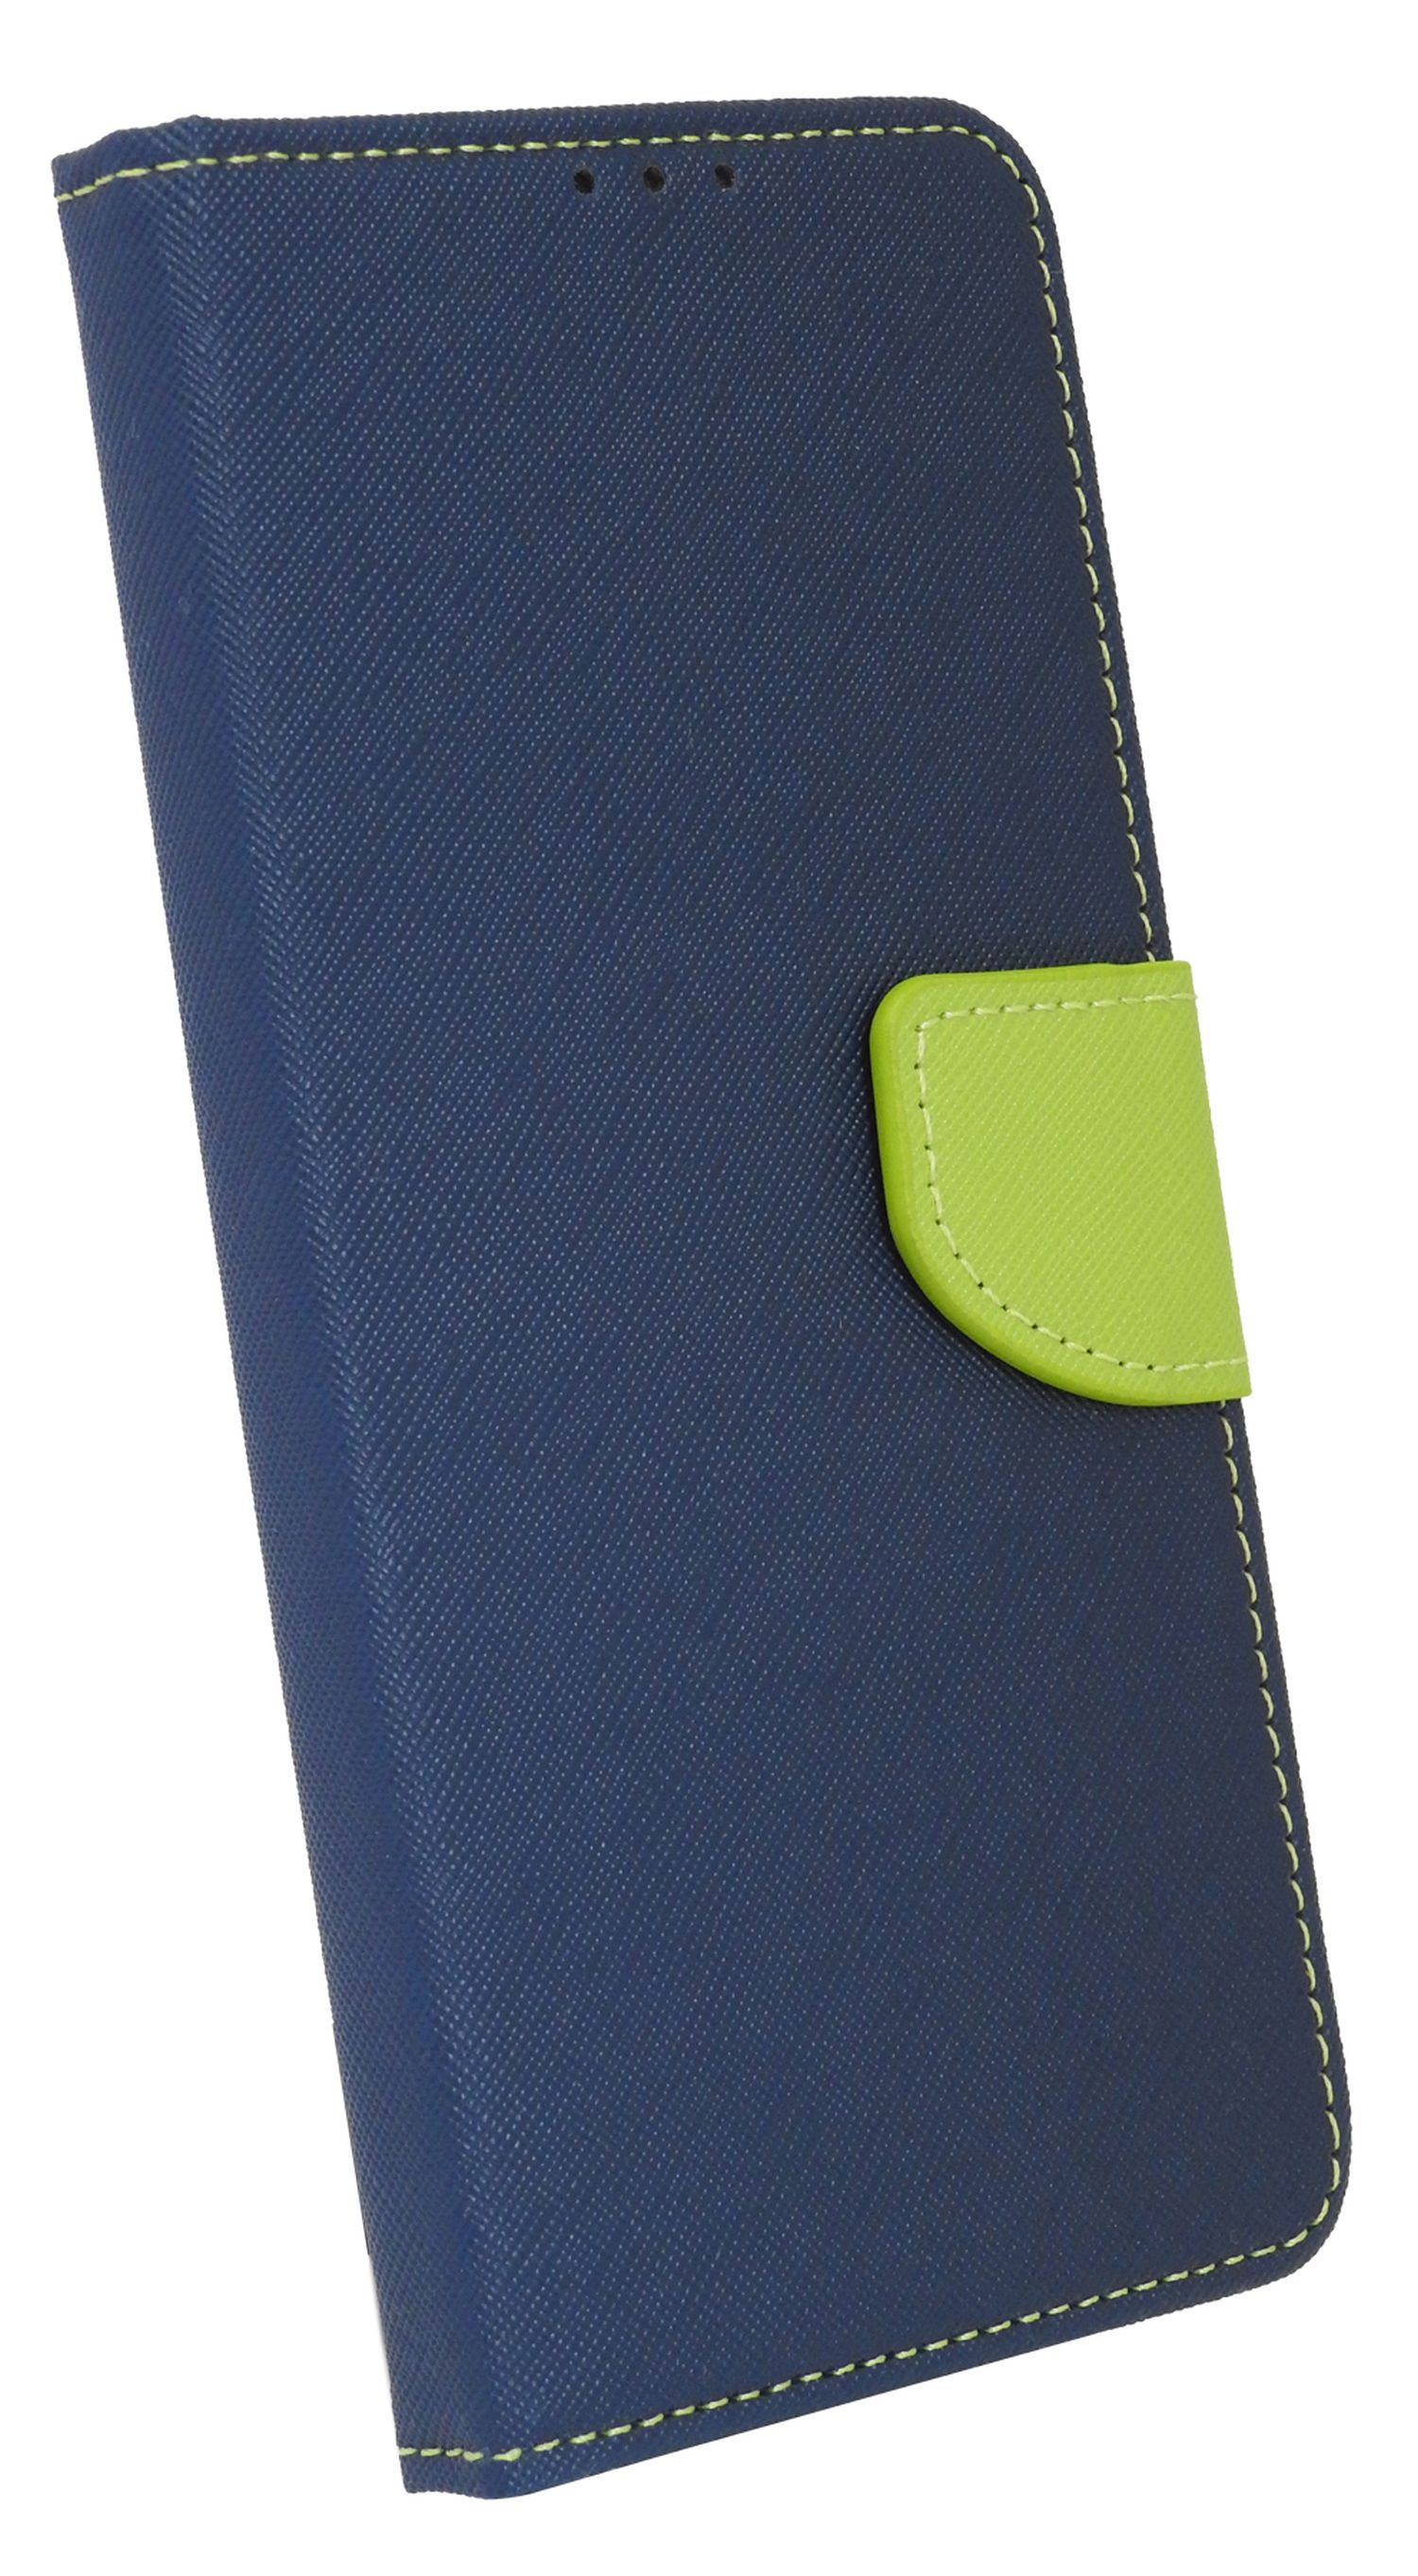 COFI Buch Tasche, Bookcover, NOTE REDMI XIAOMI, 11s Blau-Grün 5G